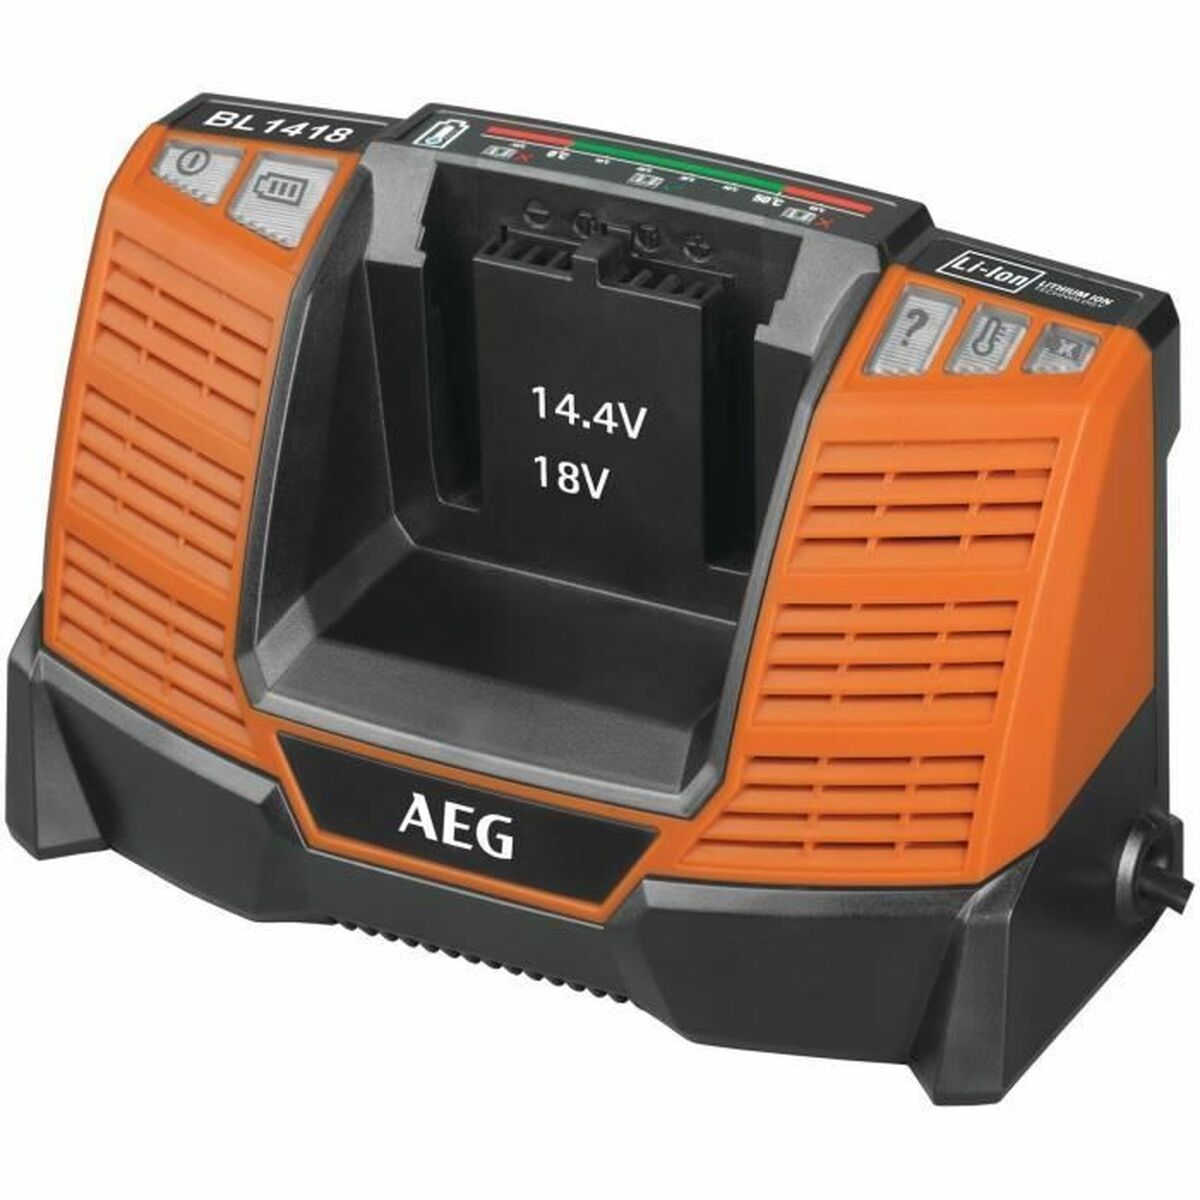 Tool kit AEG Powertools